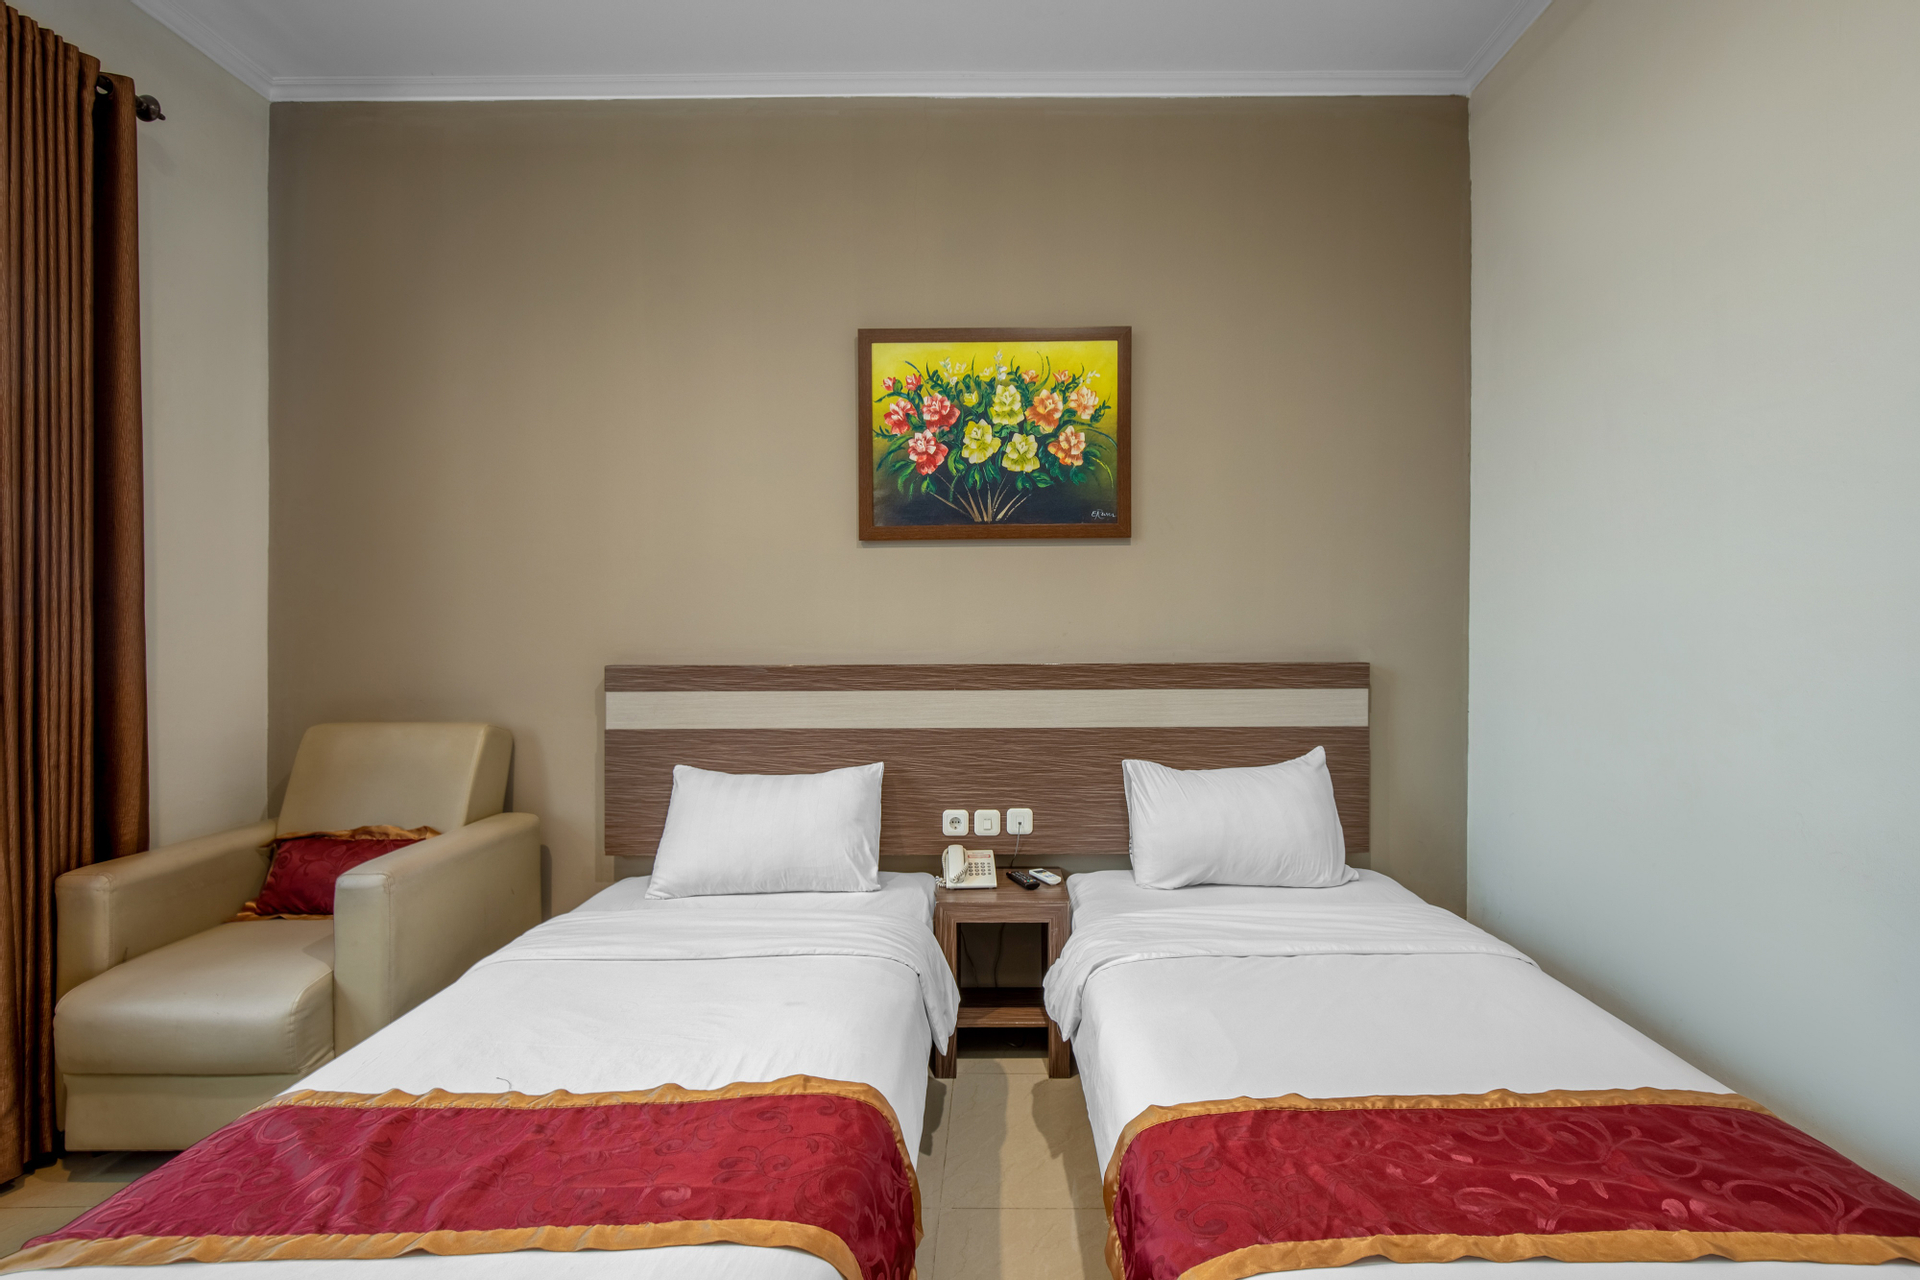 Bedroom 2, Raffleshom Hotel, Bandung